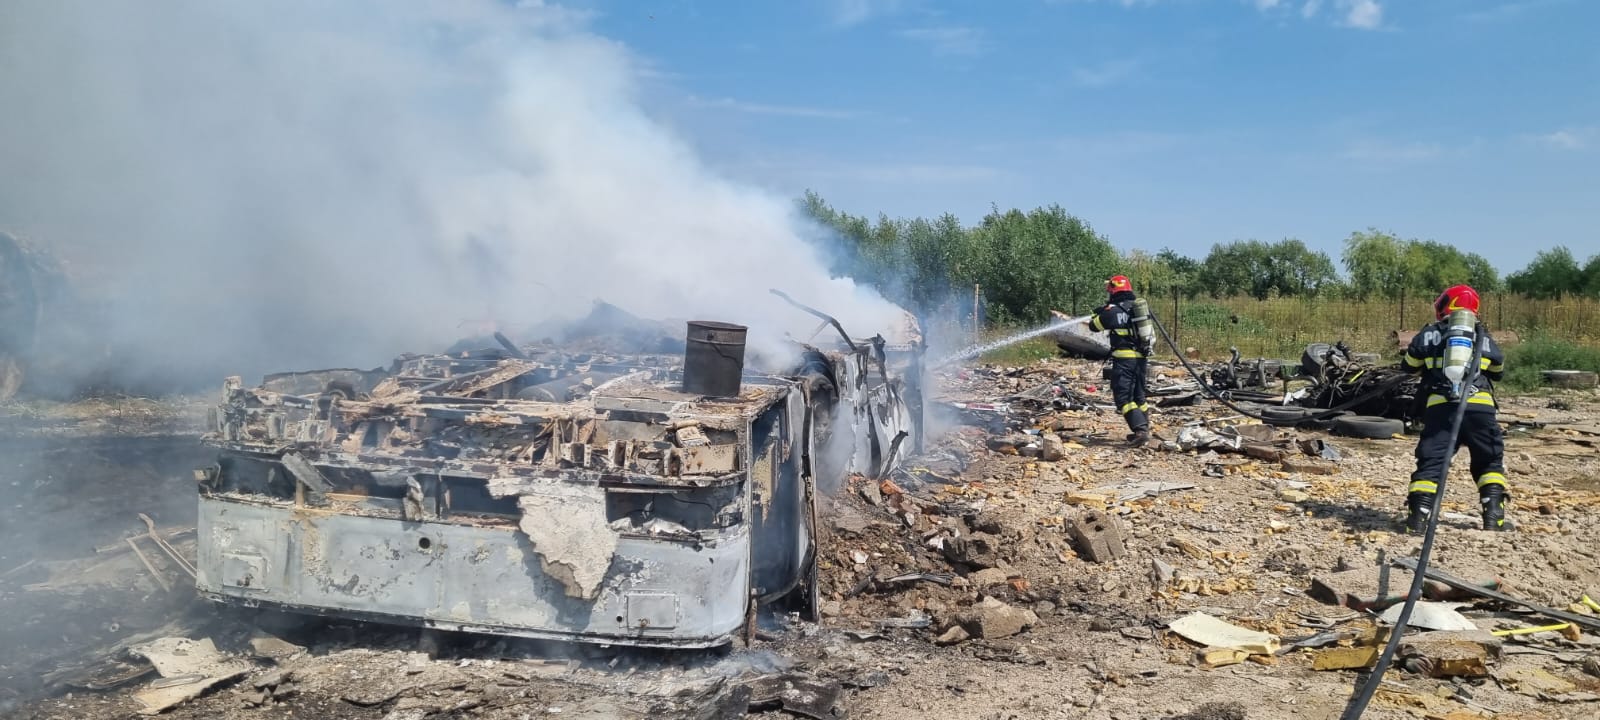 Un camion dezafectat a luat foc, la Colanu, in Ulmi